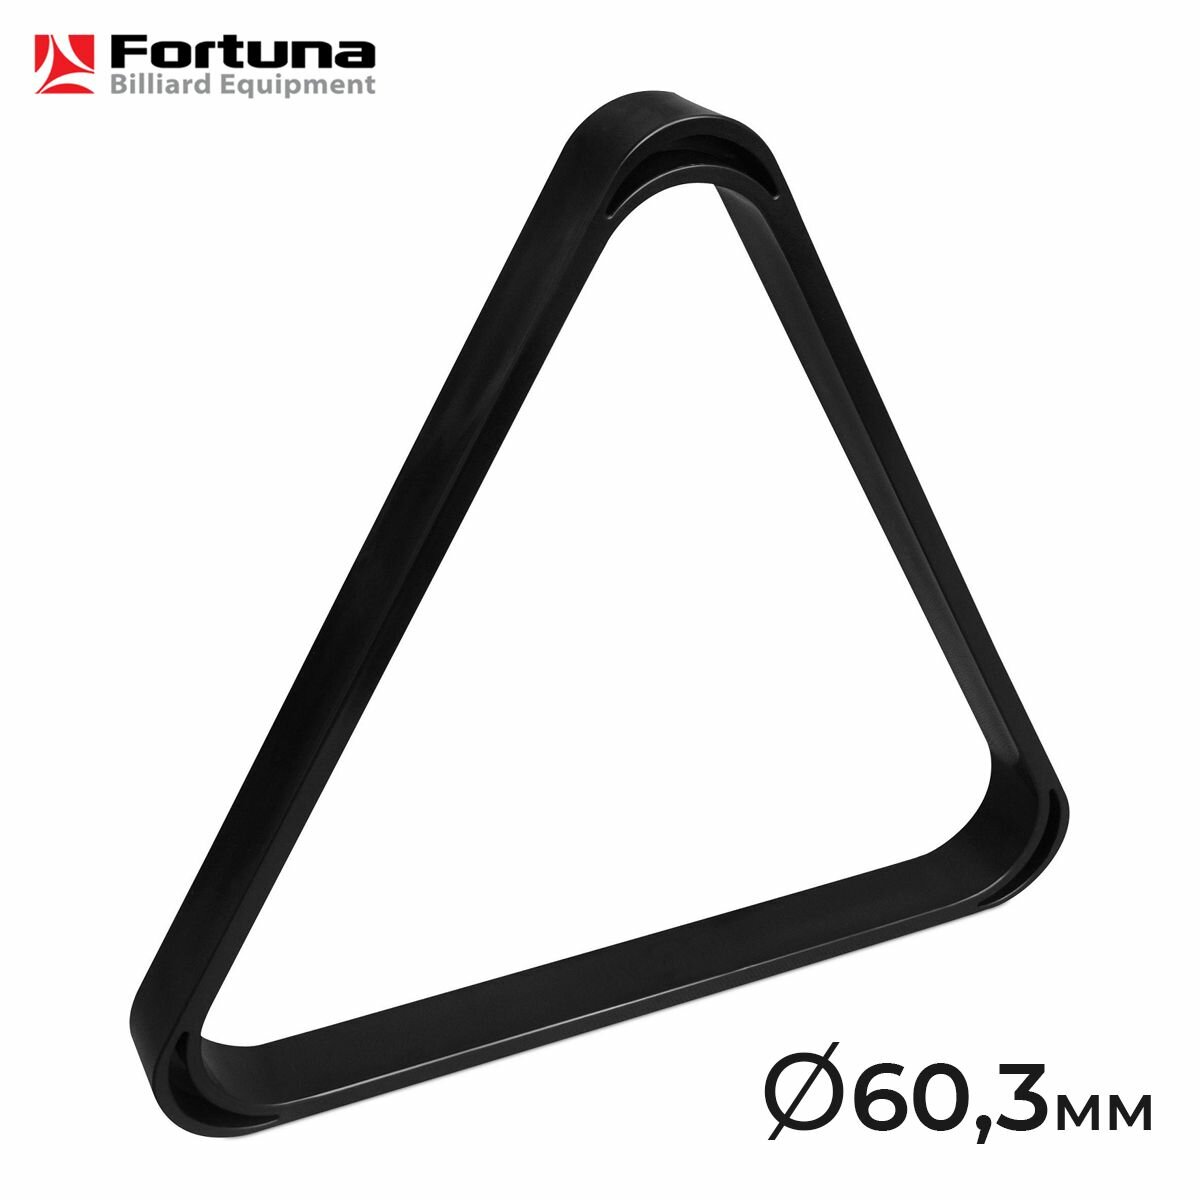 Треугольник для бильярда Fortuna Rus Pro, 60,3 мм, русская пирамида, пластик, чёрный, 1 шт.